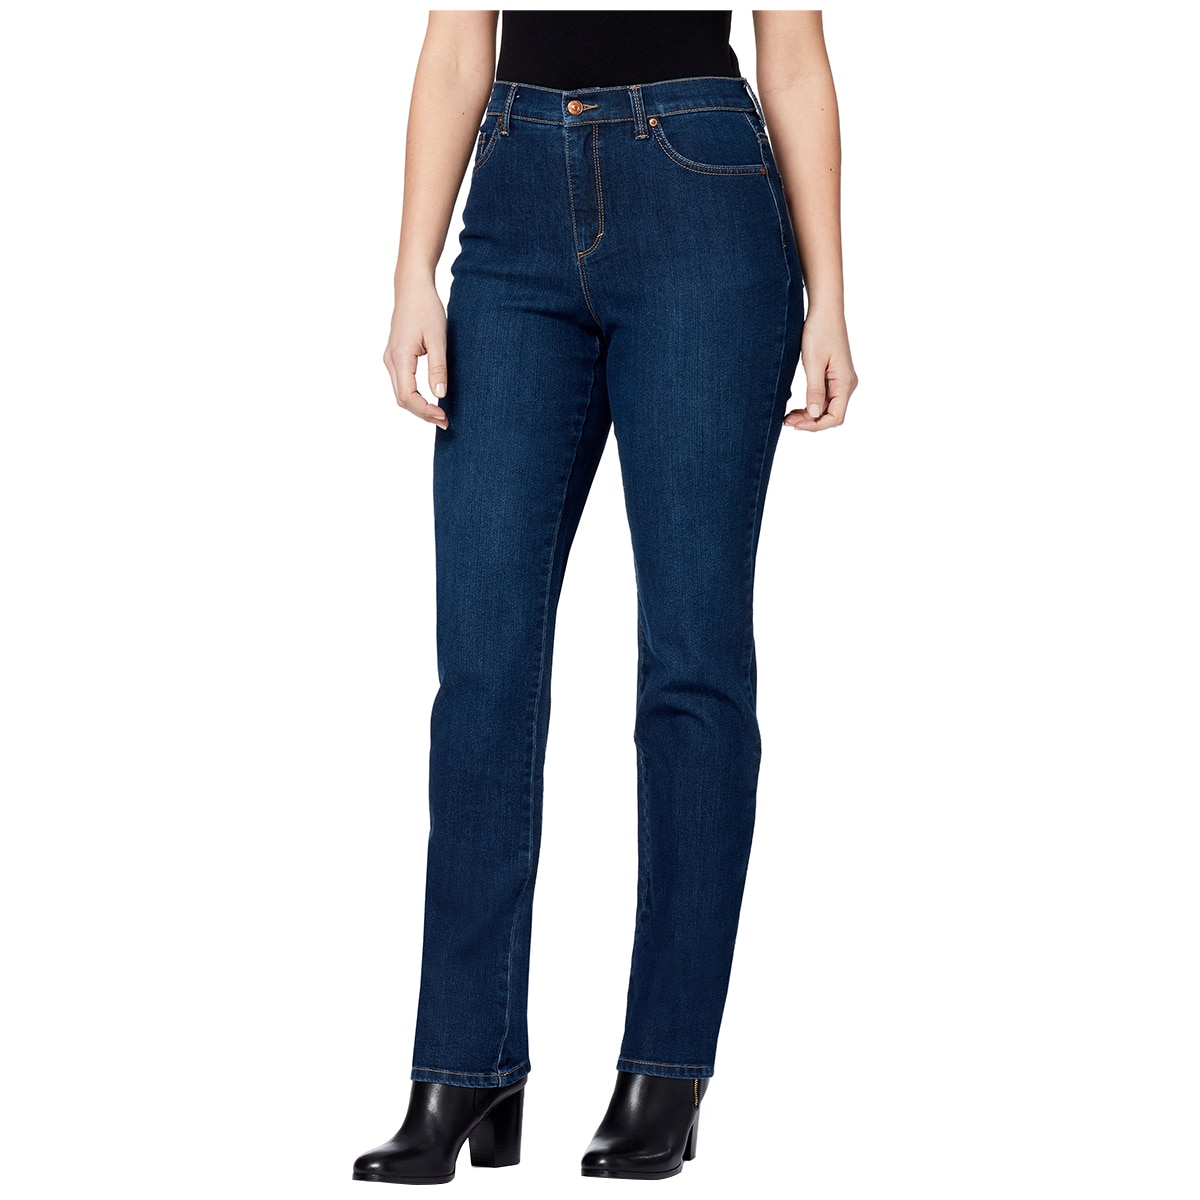 Gloria Vanderbilt Jeans For Men | vlr.eng.br